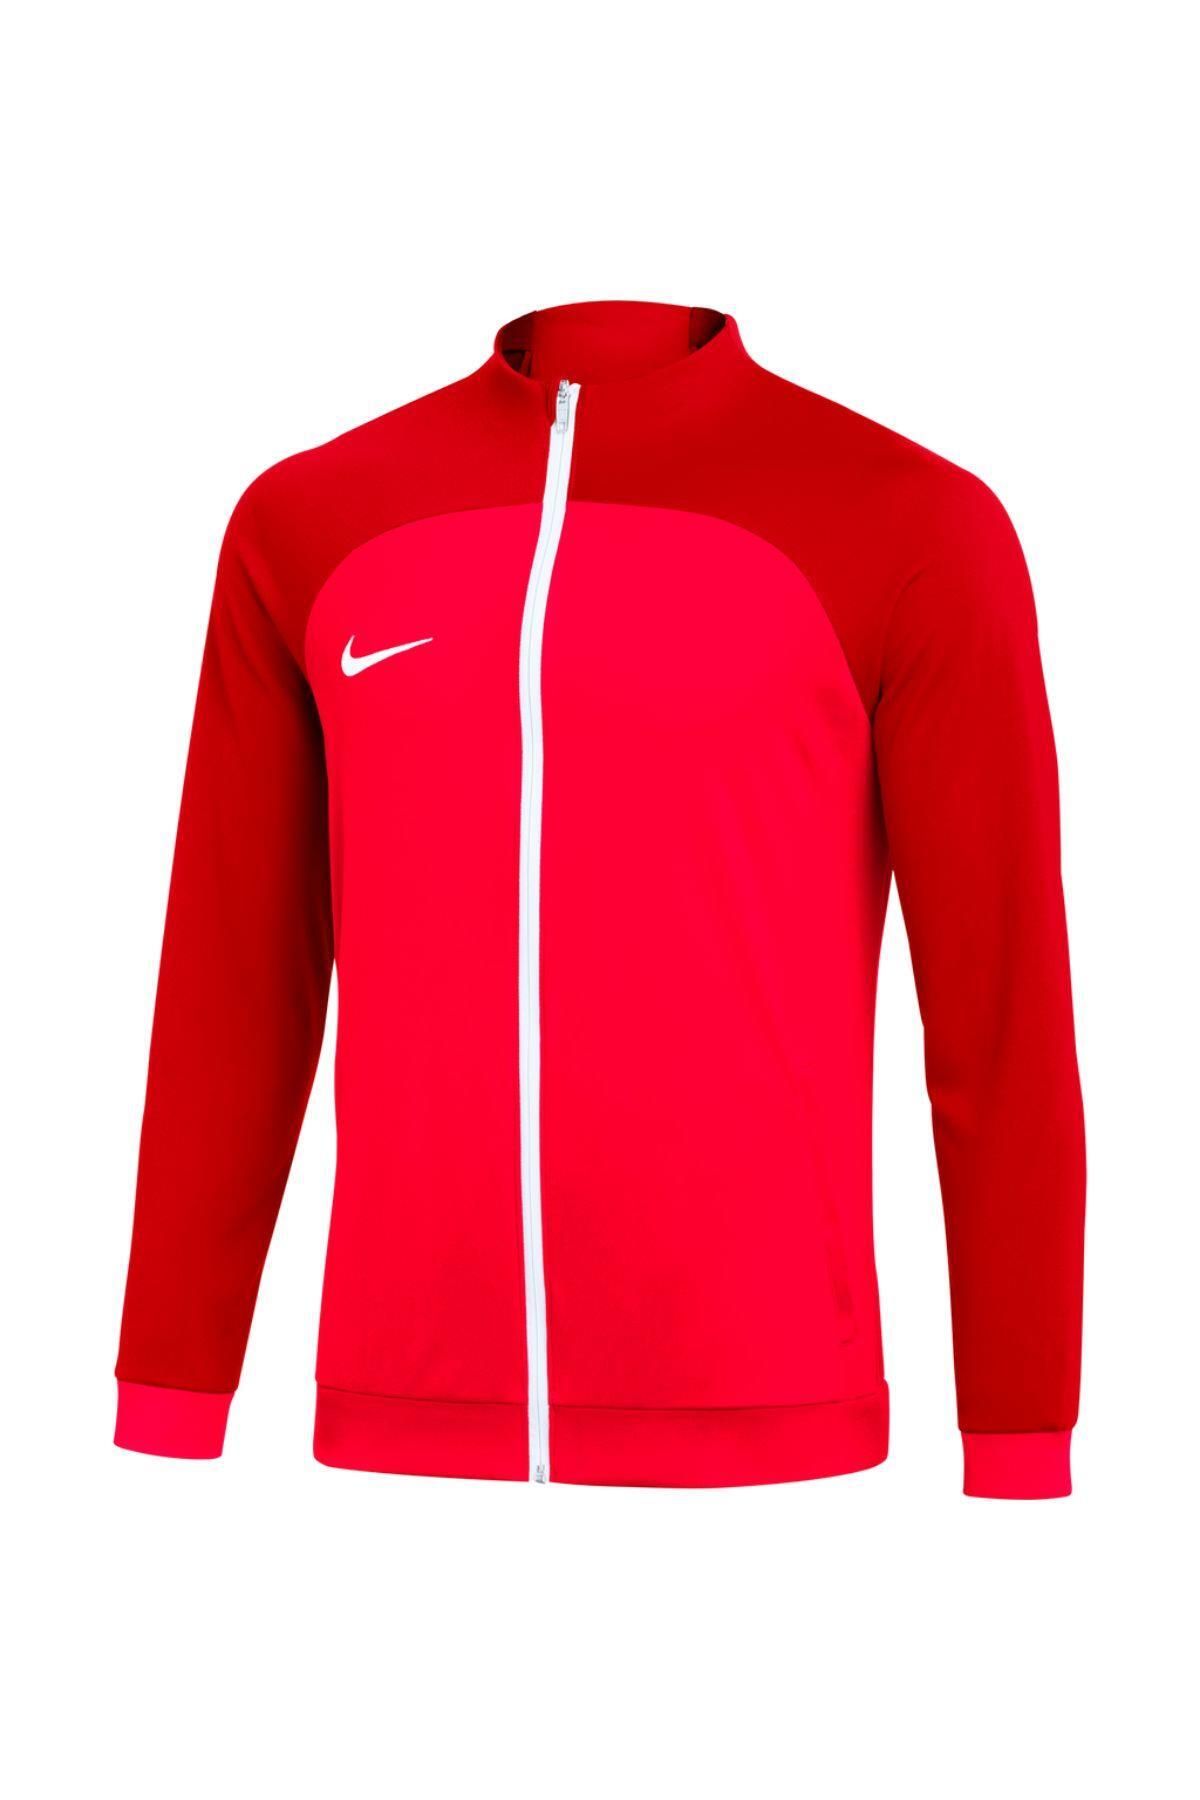 Nike Dri-fit Acdpr Erkek Kırmızı Futbol Antrenman Ceket Vodh9234-635